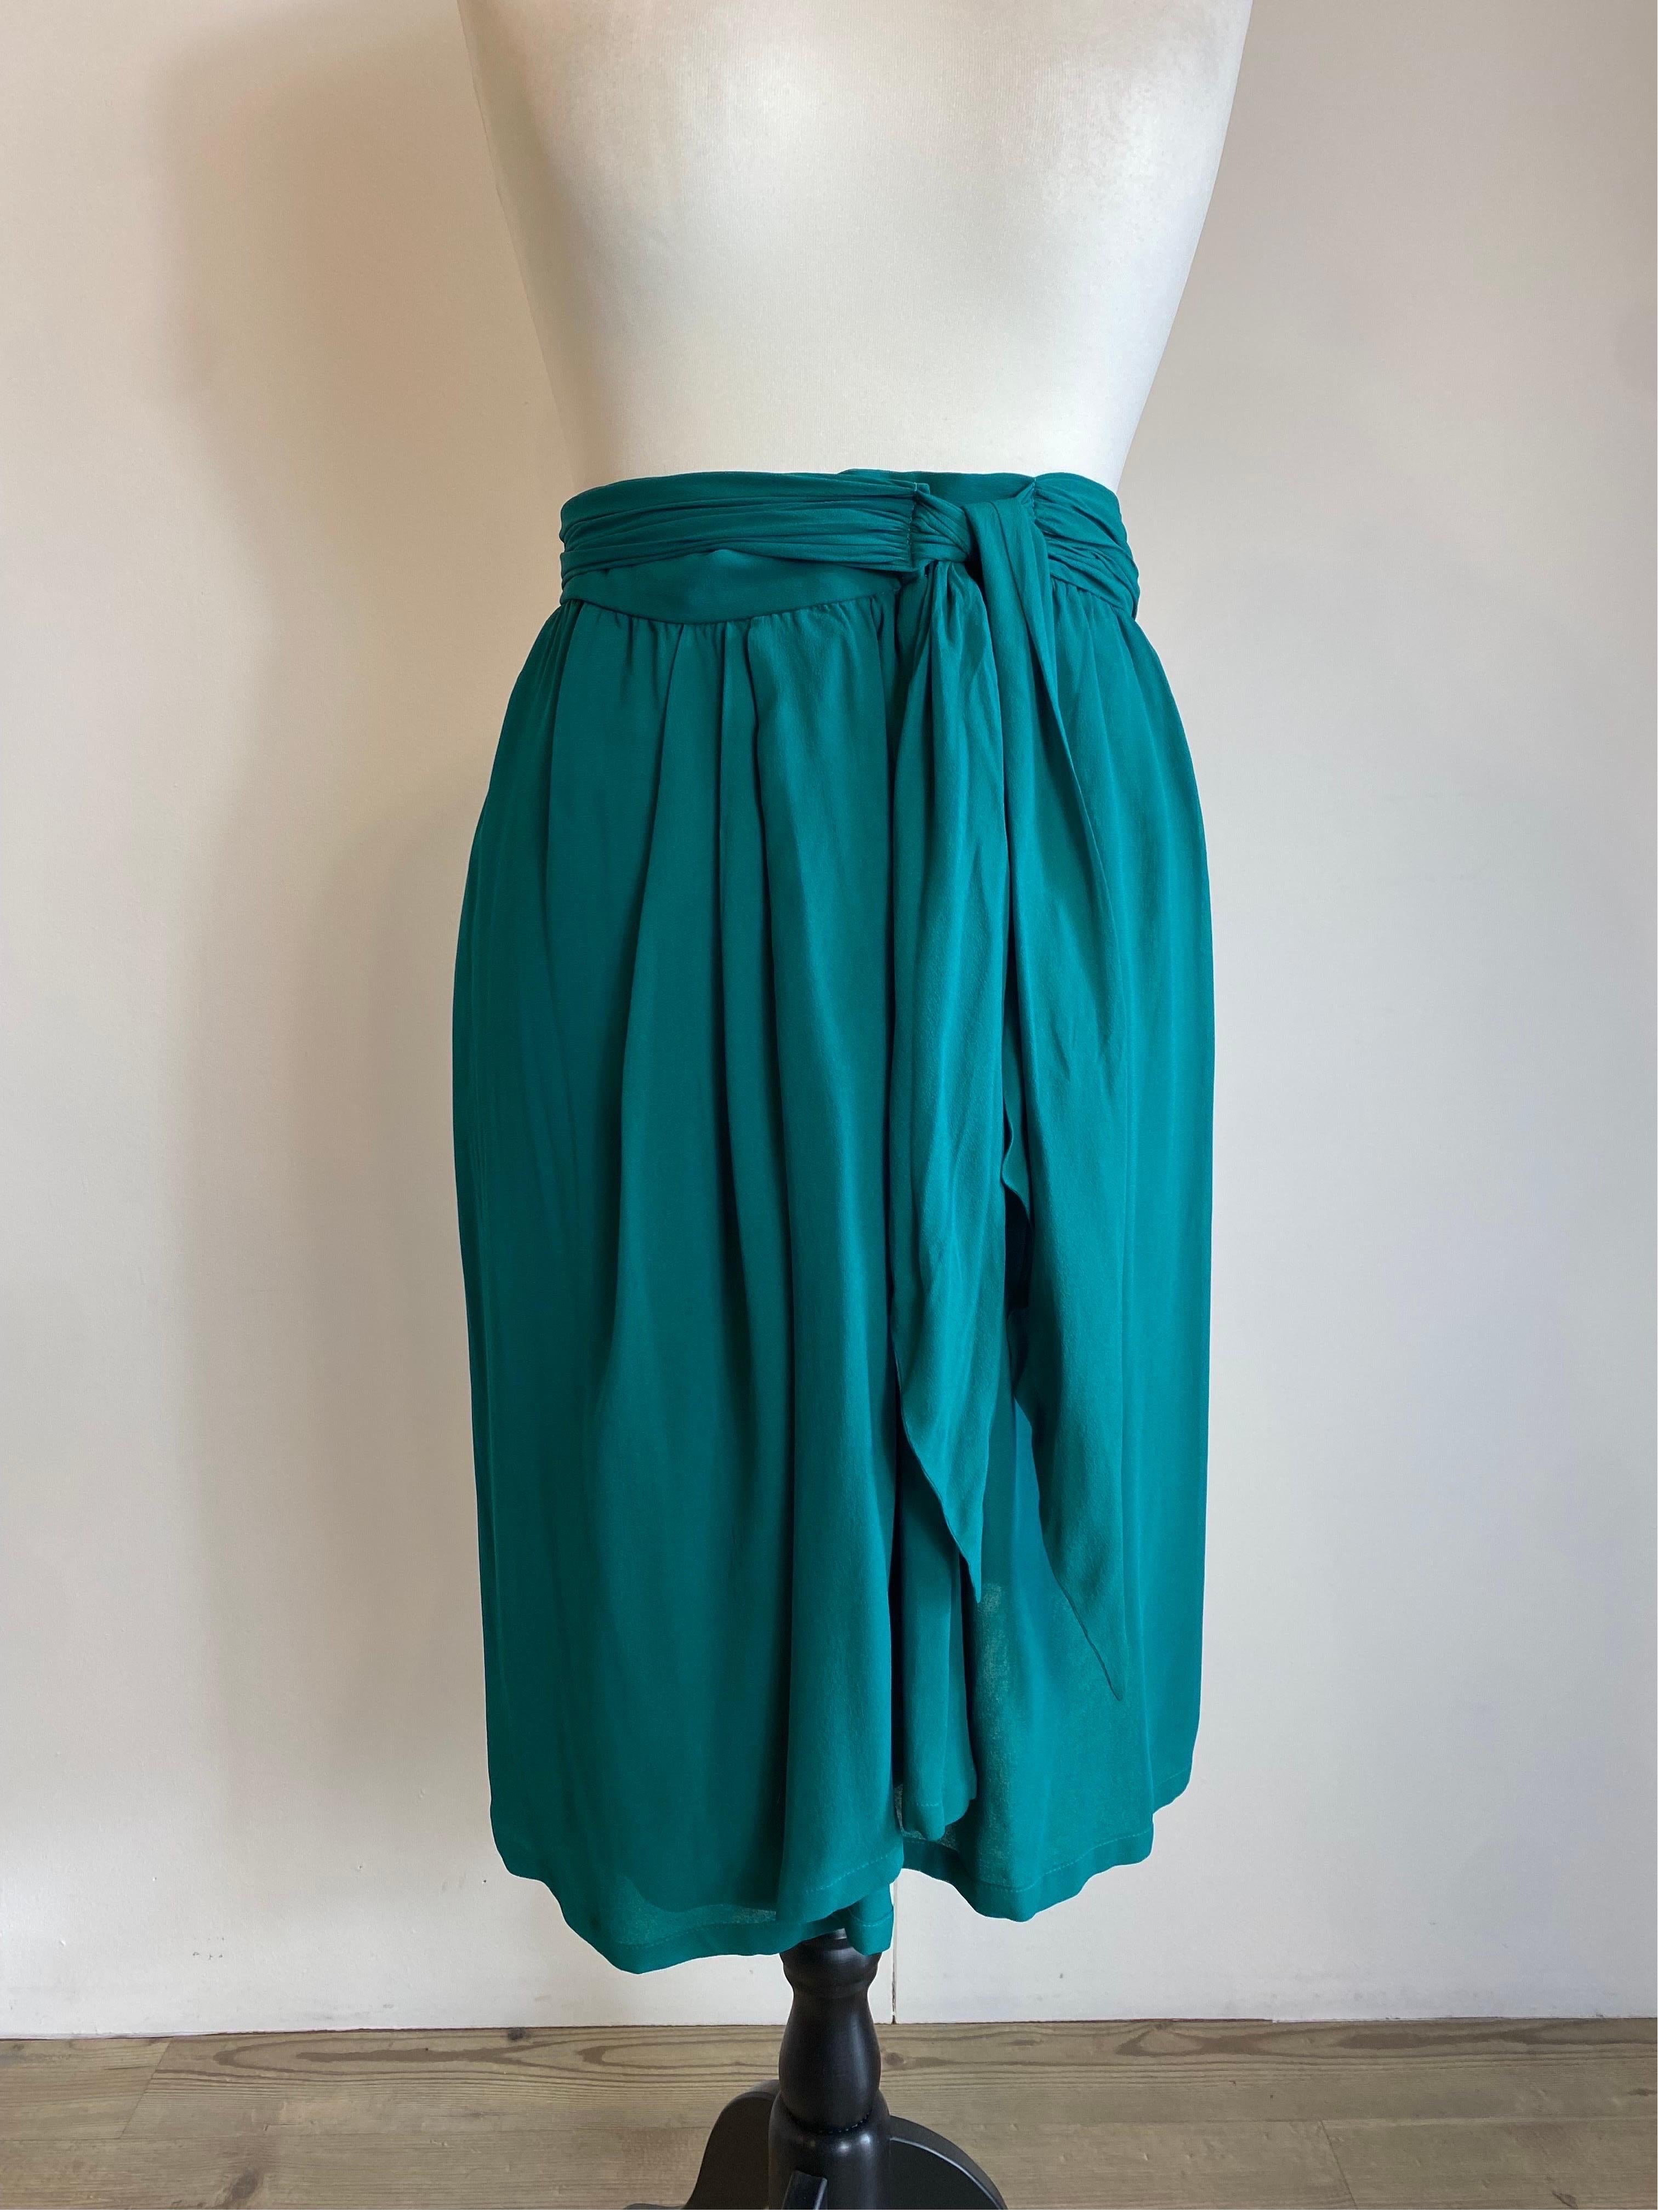 Yves Saint Laurent Vintage Emerald Green Skirt For Sale 1